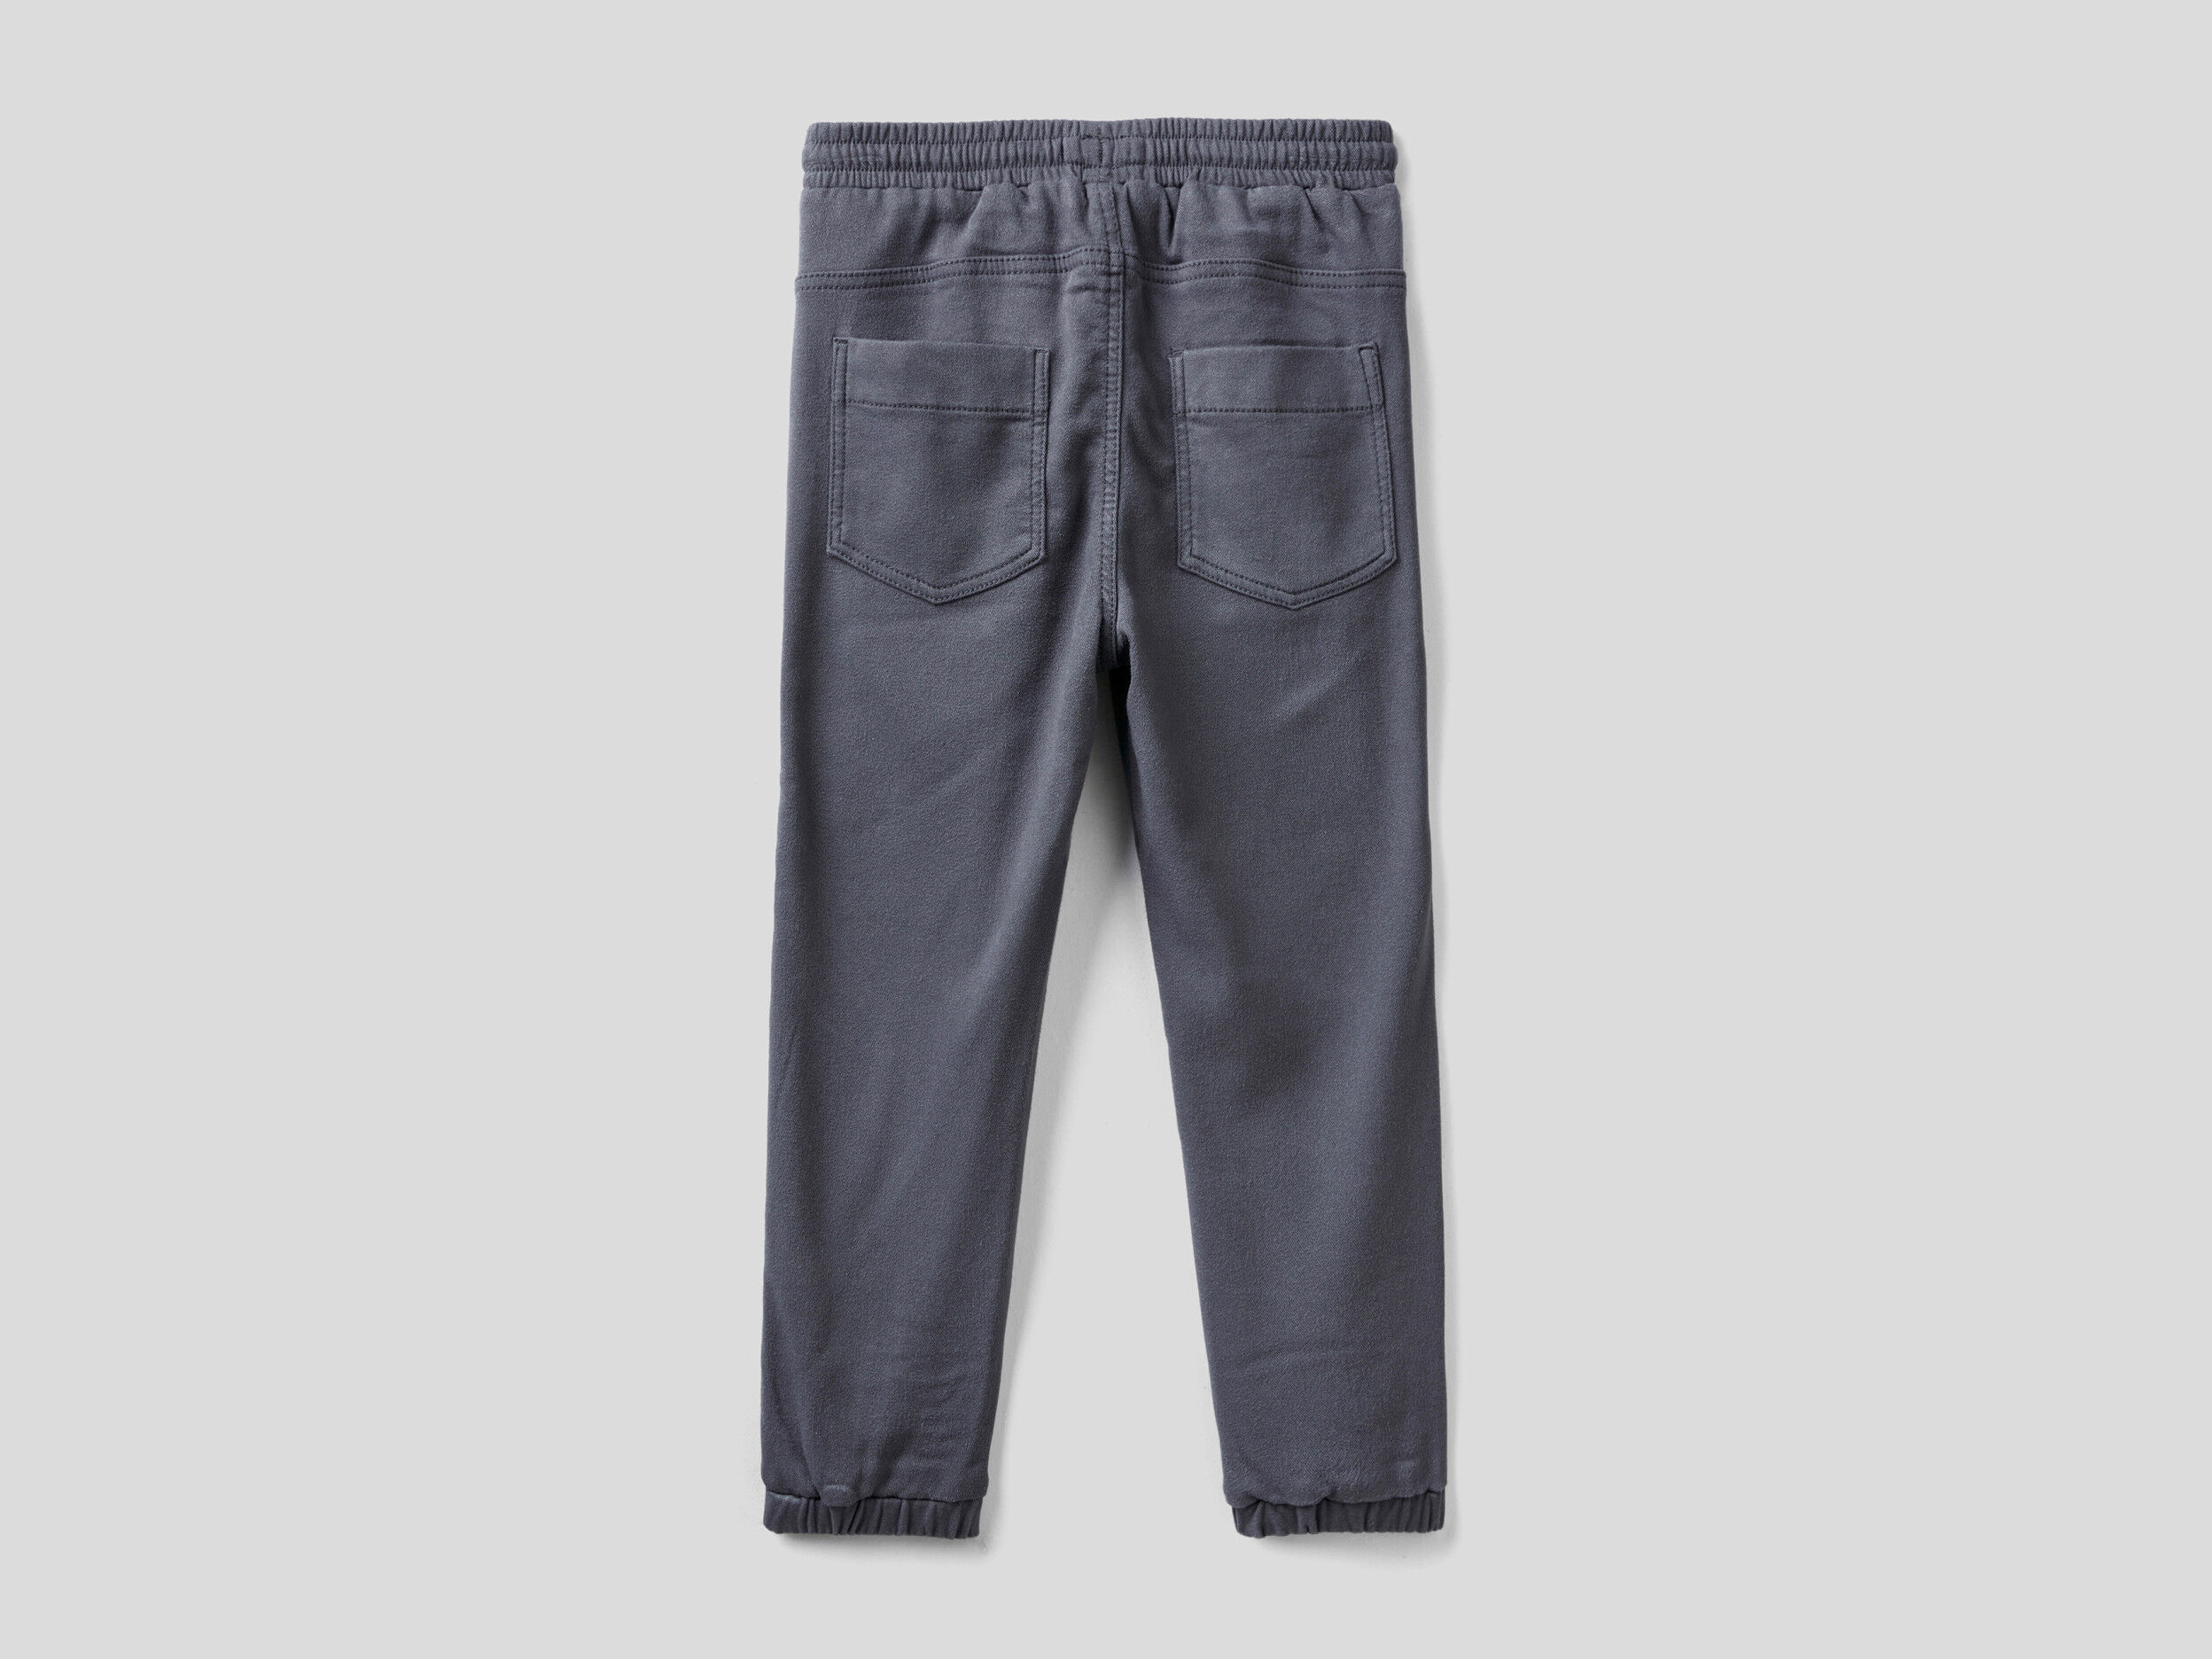 Joggers Fluidi Con Maxi Tasche United Colors of Benetton Abbigliamento Pantaloni e jeans Pantaloni Joggers 